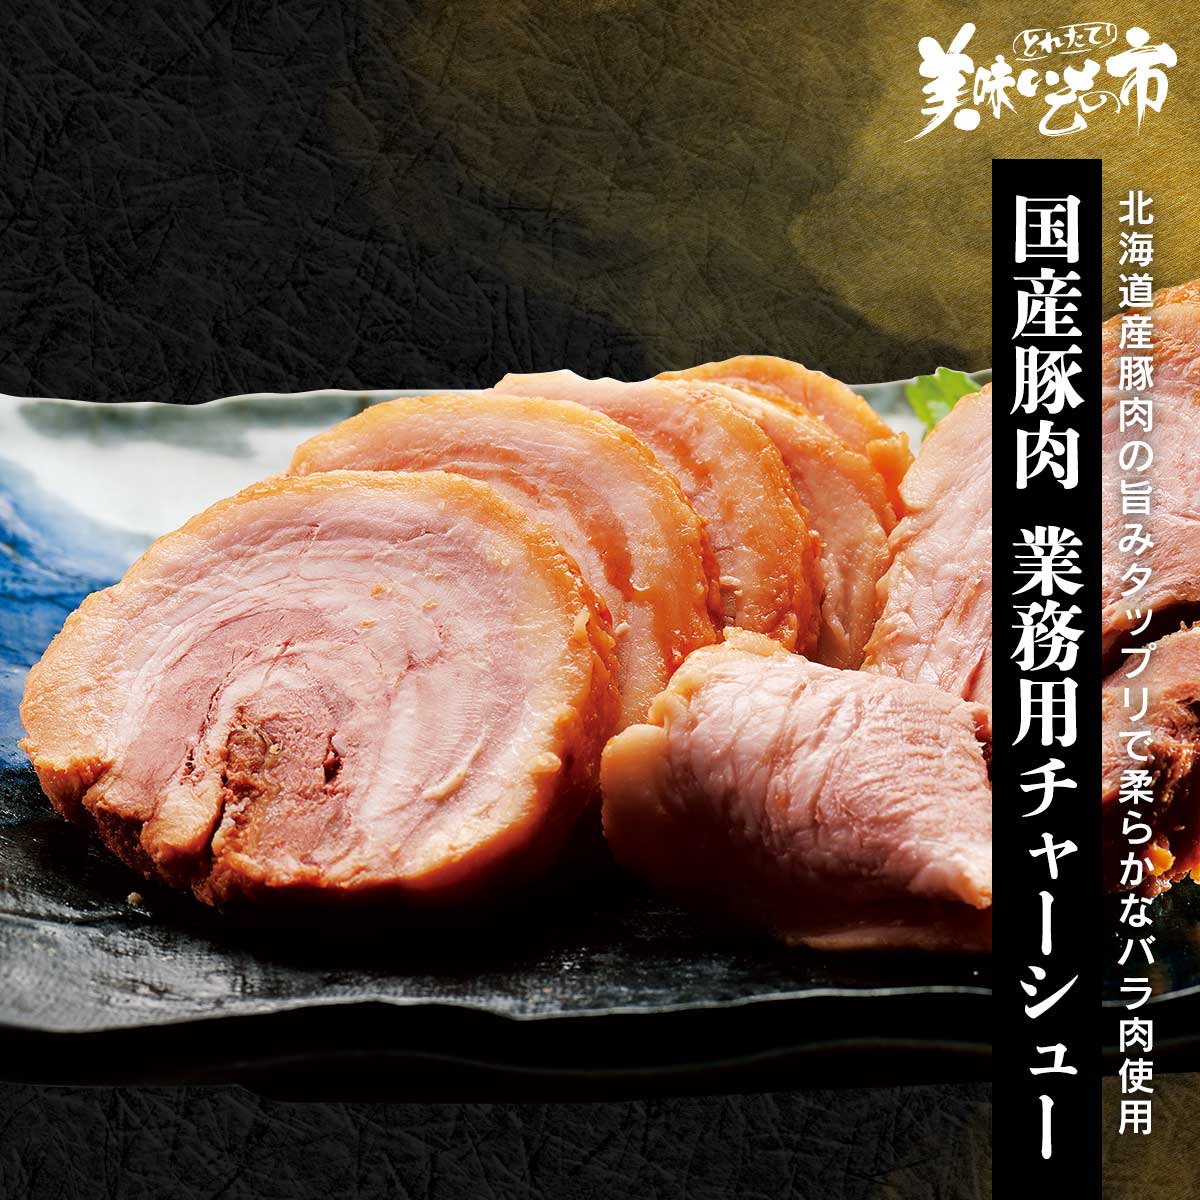 【訳ありアウトレットセール】北海道産豚肉 業務用チャーシュー ねこぶだし でおなじみ とれたて 美味いもの市 から登場